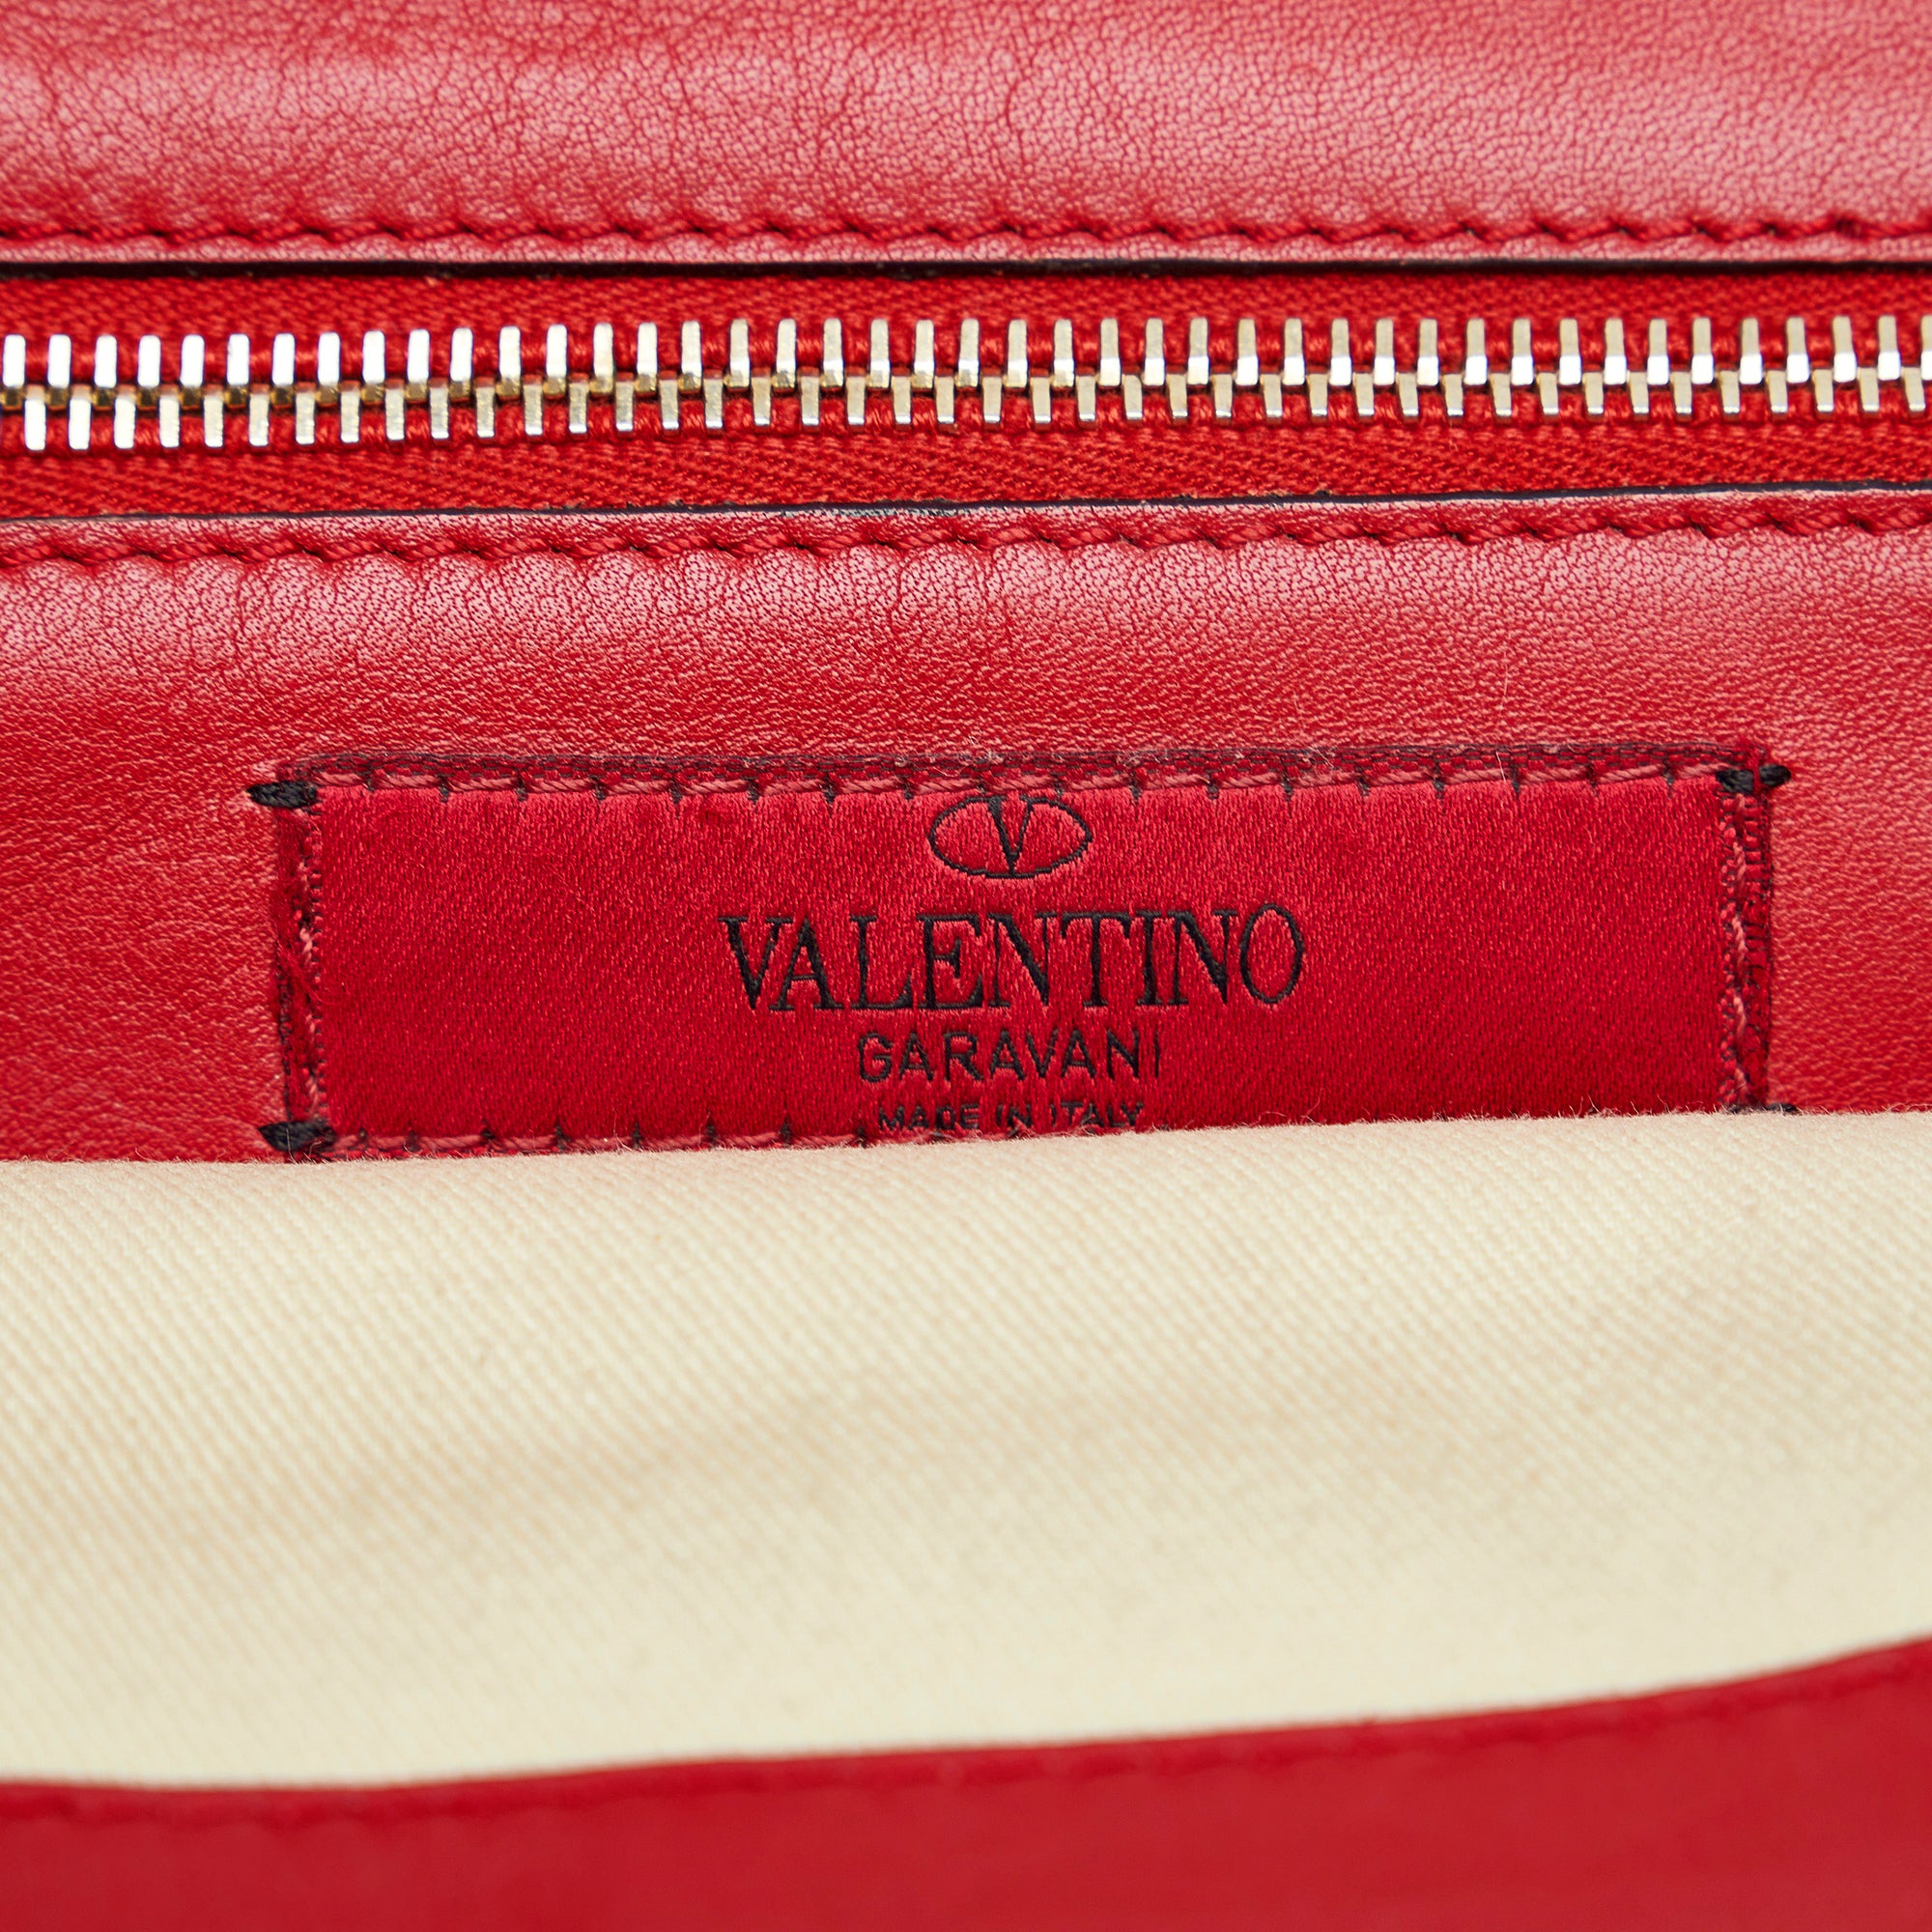 Red Valentino Rockstud Satchel – Designer Revival